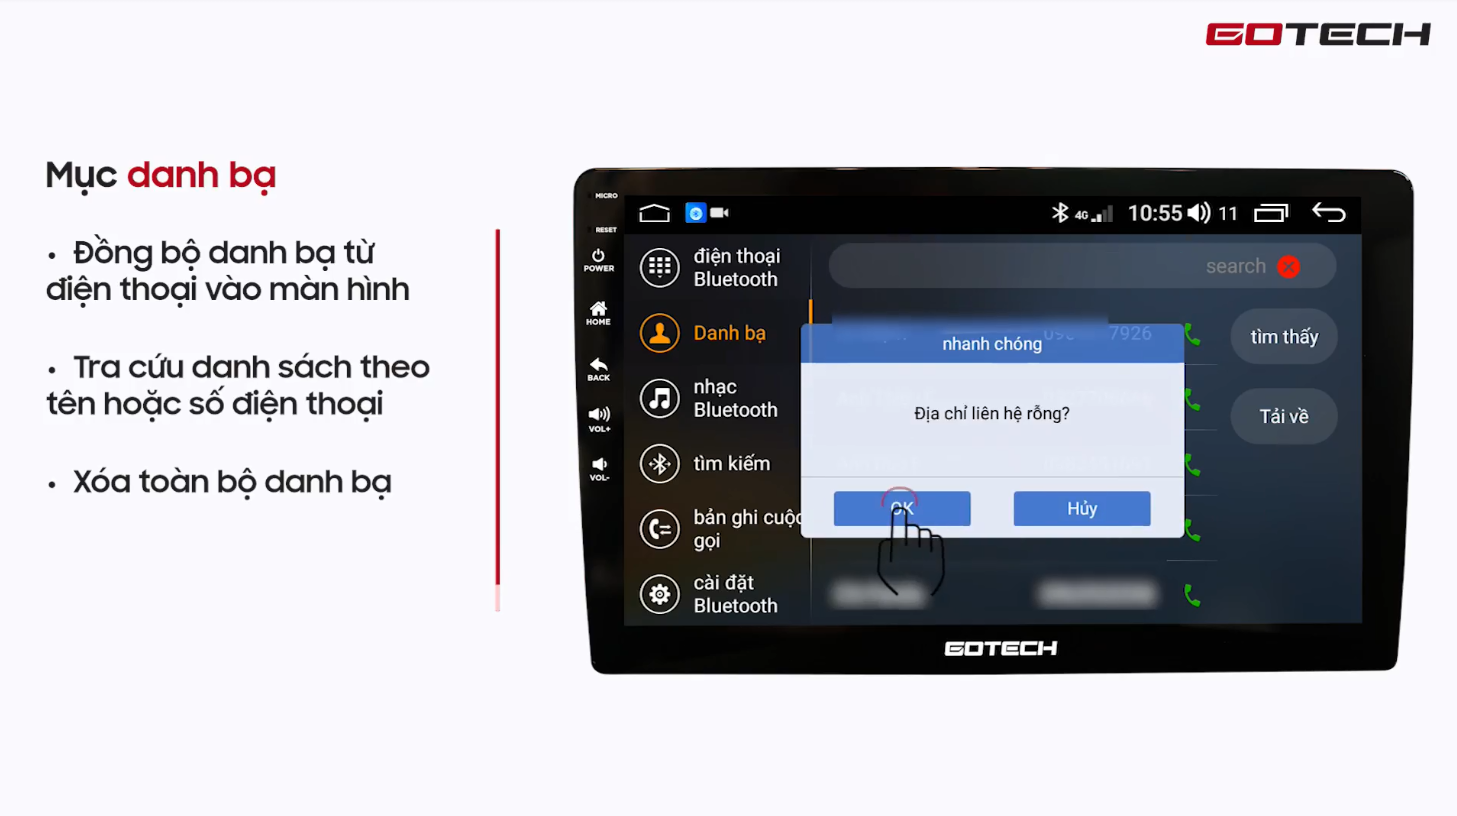 Hướng dẫn kết nối Bluetooth với điện thoại trên màn hình Gotech